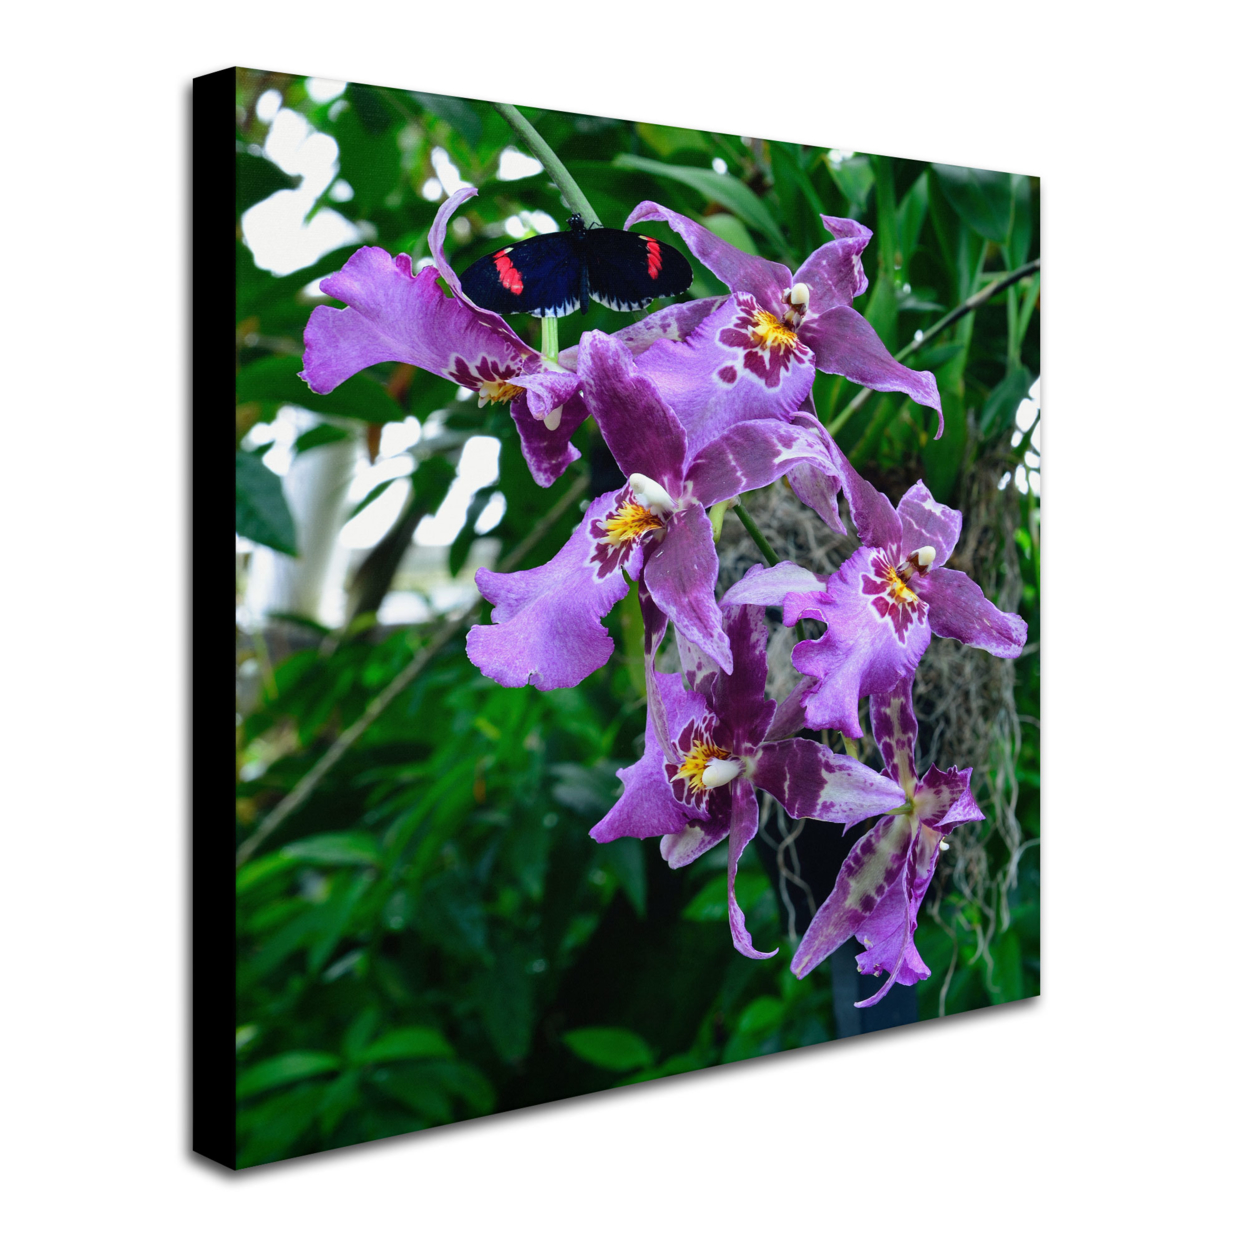 Kurt Shaffer 'Postman Butterfly On Orchid' Huge Canvas Art 35 X 35